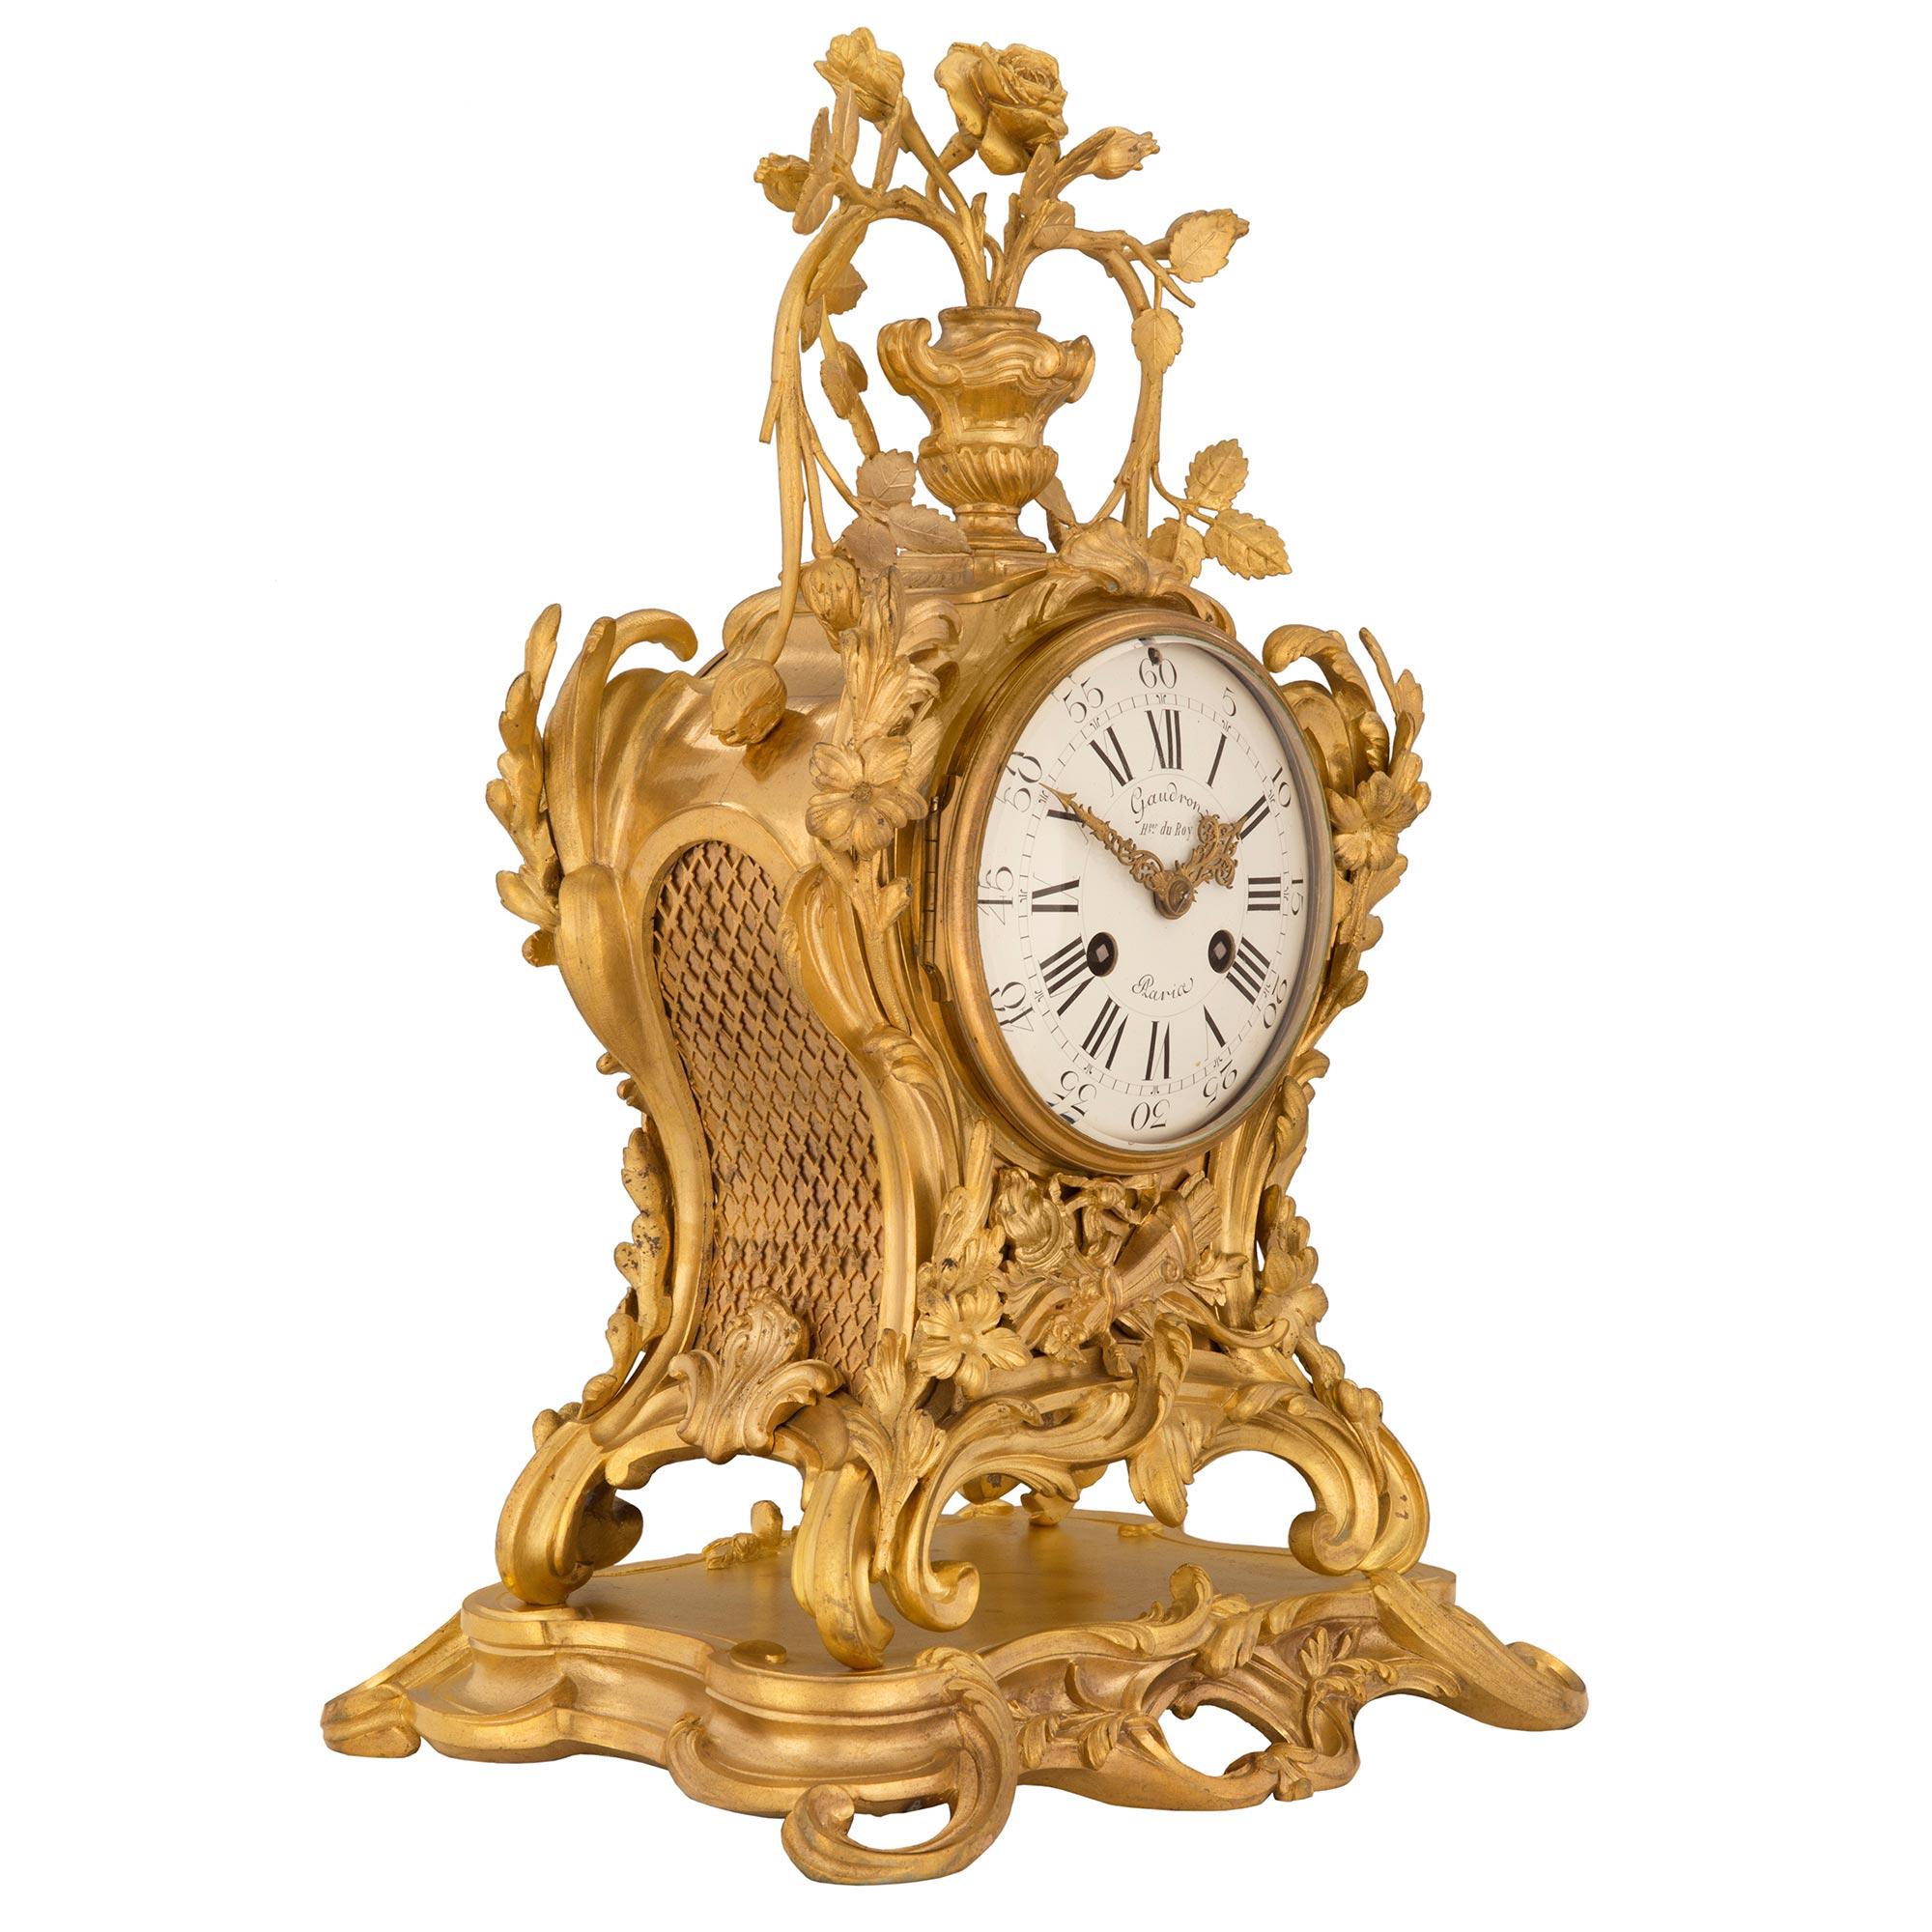 Prächtige französische Ormolu-Uhr aus dem frühen 18. Jahrhundert aus der Zeit Ludwigs XV., signiert Gaudrons du Roy, Paris. Die Uhr steht auf einem Ormolu-Sockel mit üppig geschwungenem Uhrwerk. Unter dem Ziffernblatt und in der Mitte der Uhr